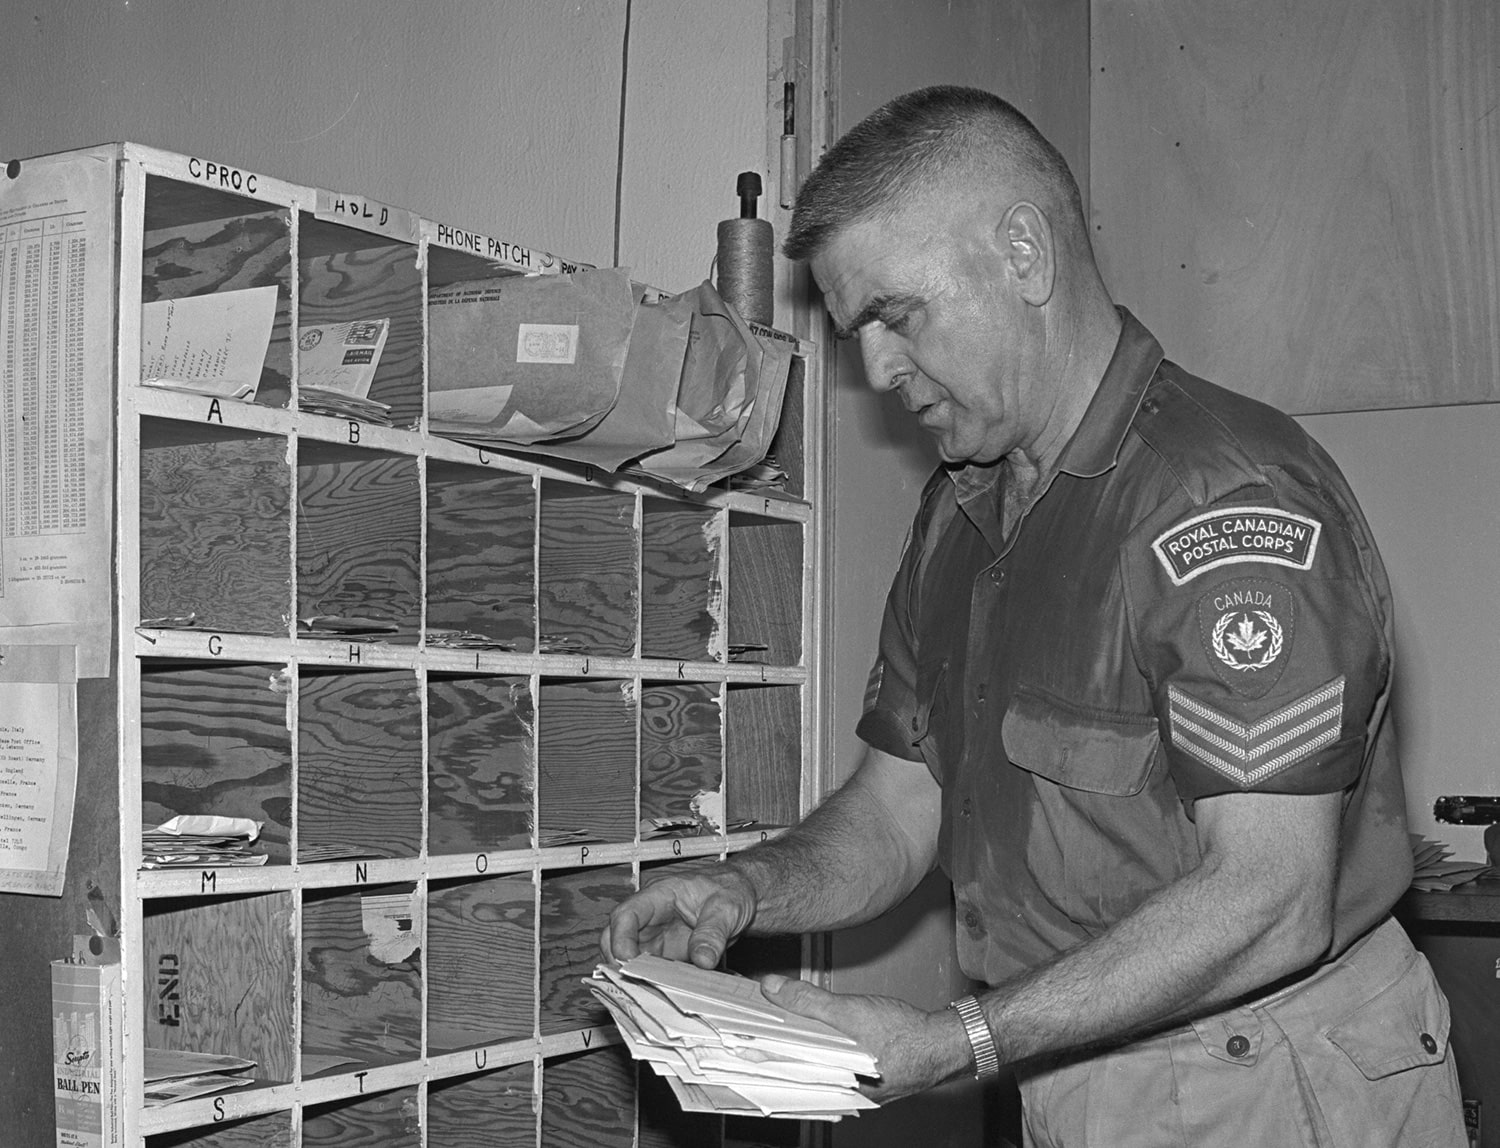 Member sorting mail